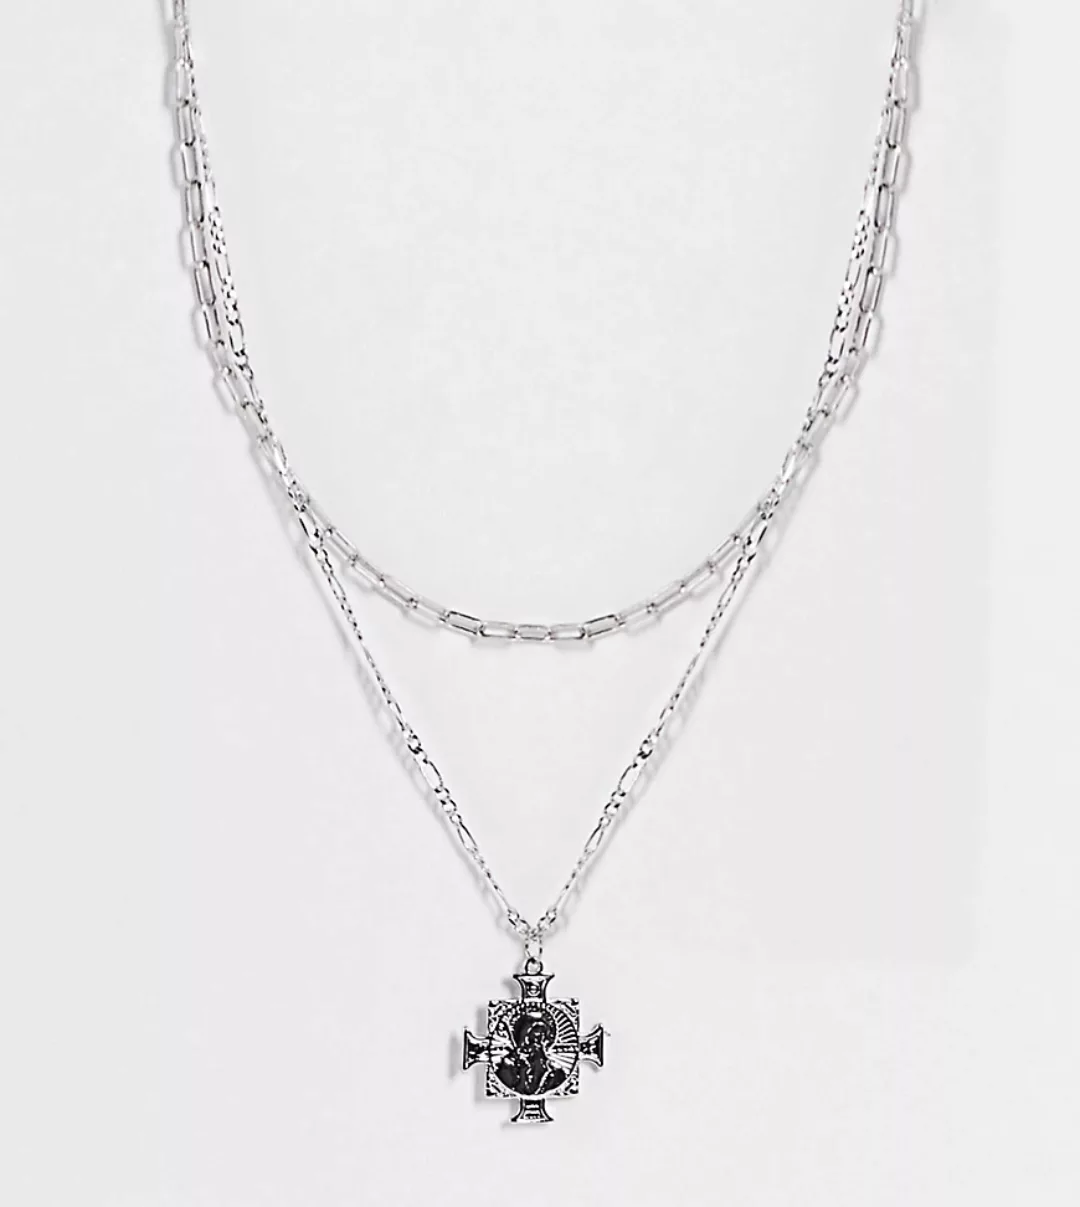 Reclaimed Vintage Inspired – Halskette mit Kreuzanhänger in Silber-Optik, 2 günstig online kaufen